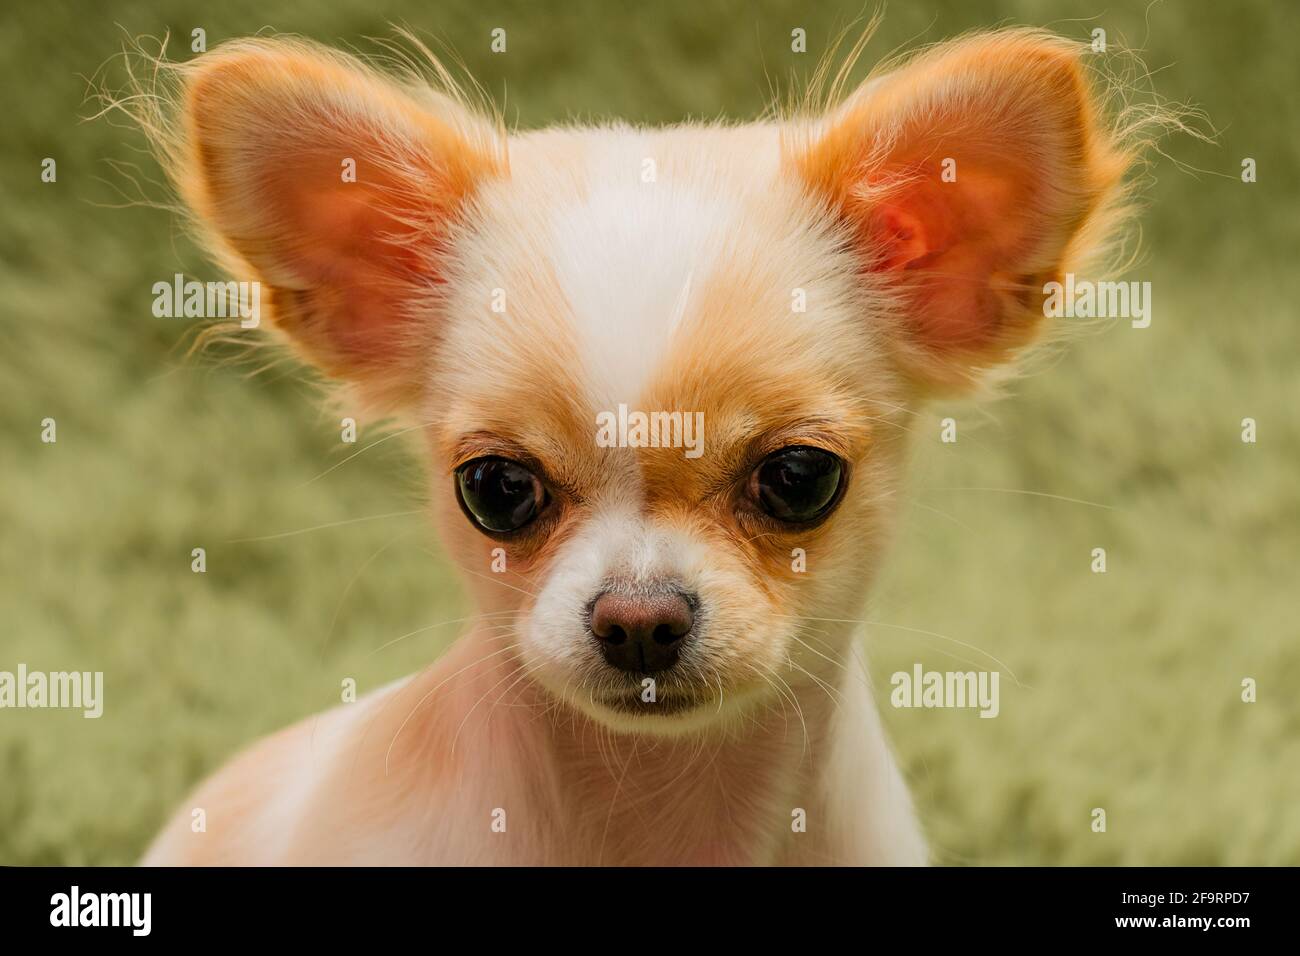 Cucciolo di Chihuahua su una coperta soffice. Bianco con macchie rosse chihuahua cane a casa. Concetto di animali domestici. Foto Stock